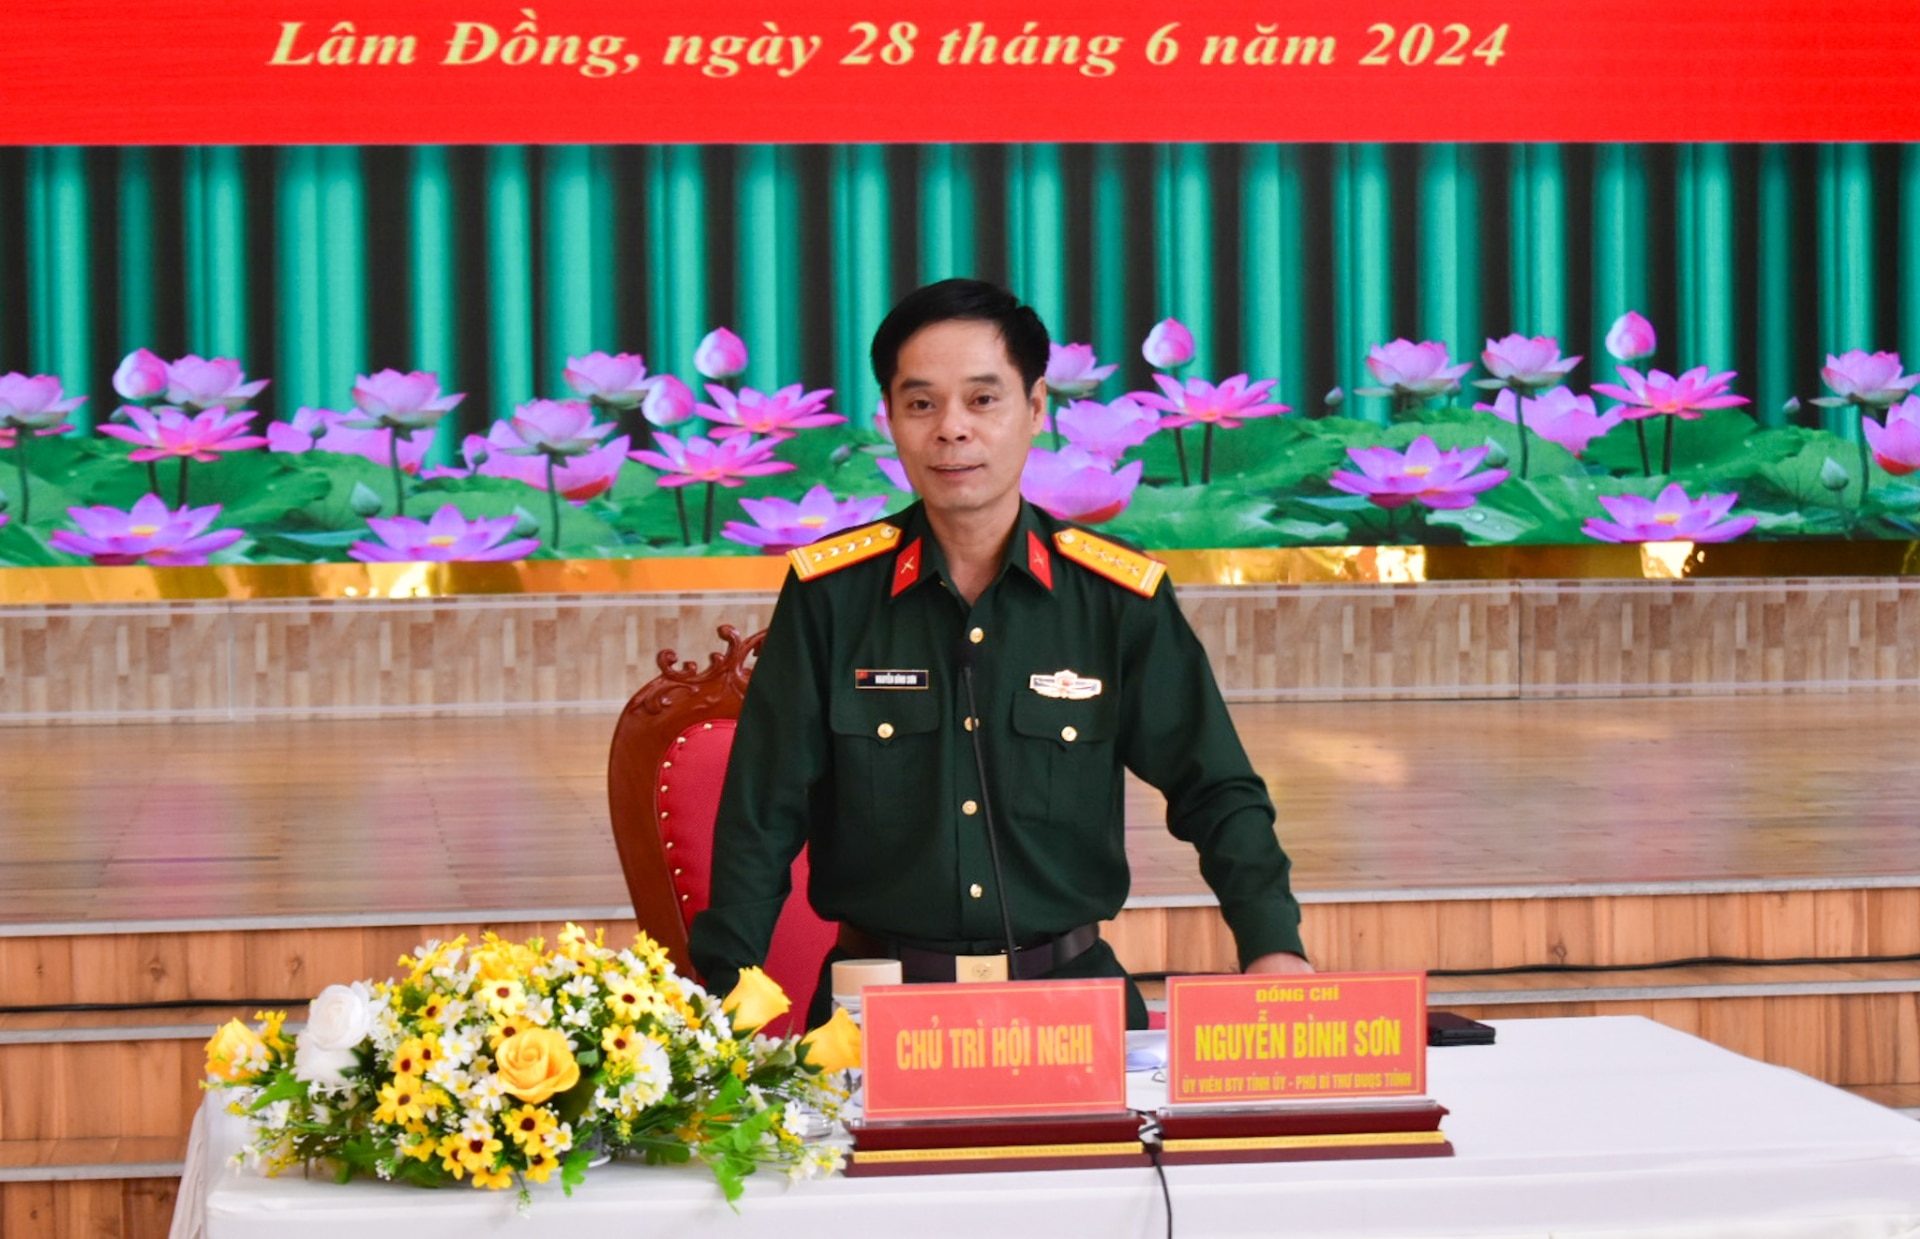 Đại tá Nguyễn Bình Sơn - Ủy viên Ban Thường vụ Tỉnh ủy, Chỉ huy trưởng Bộ CHQS tỉnh phát biểu chỉ đạo hội nghị 